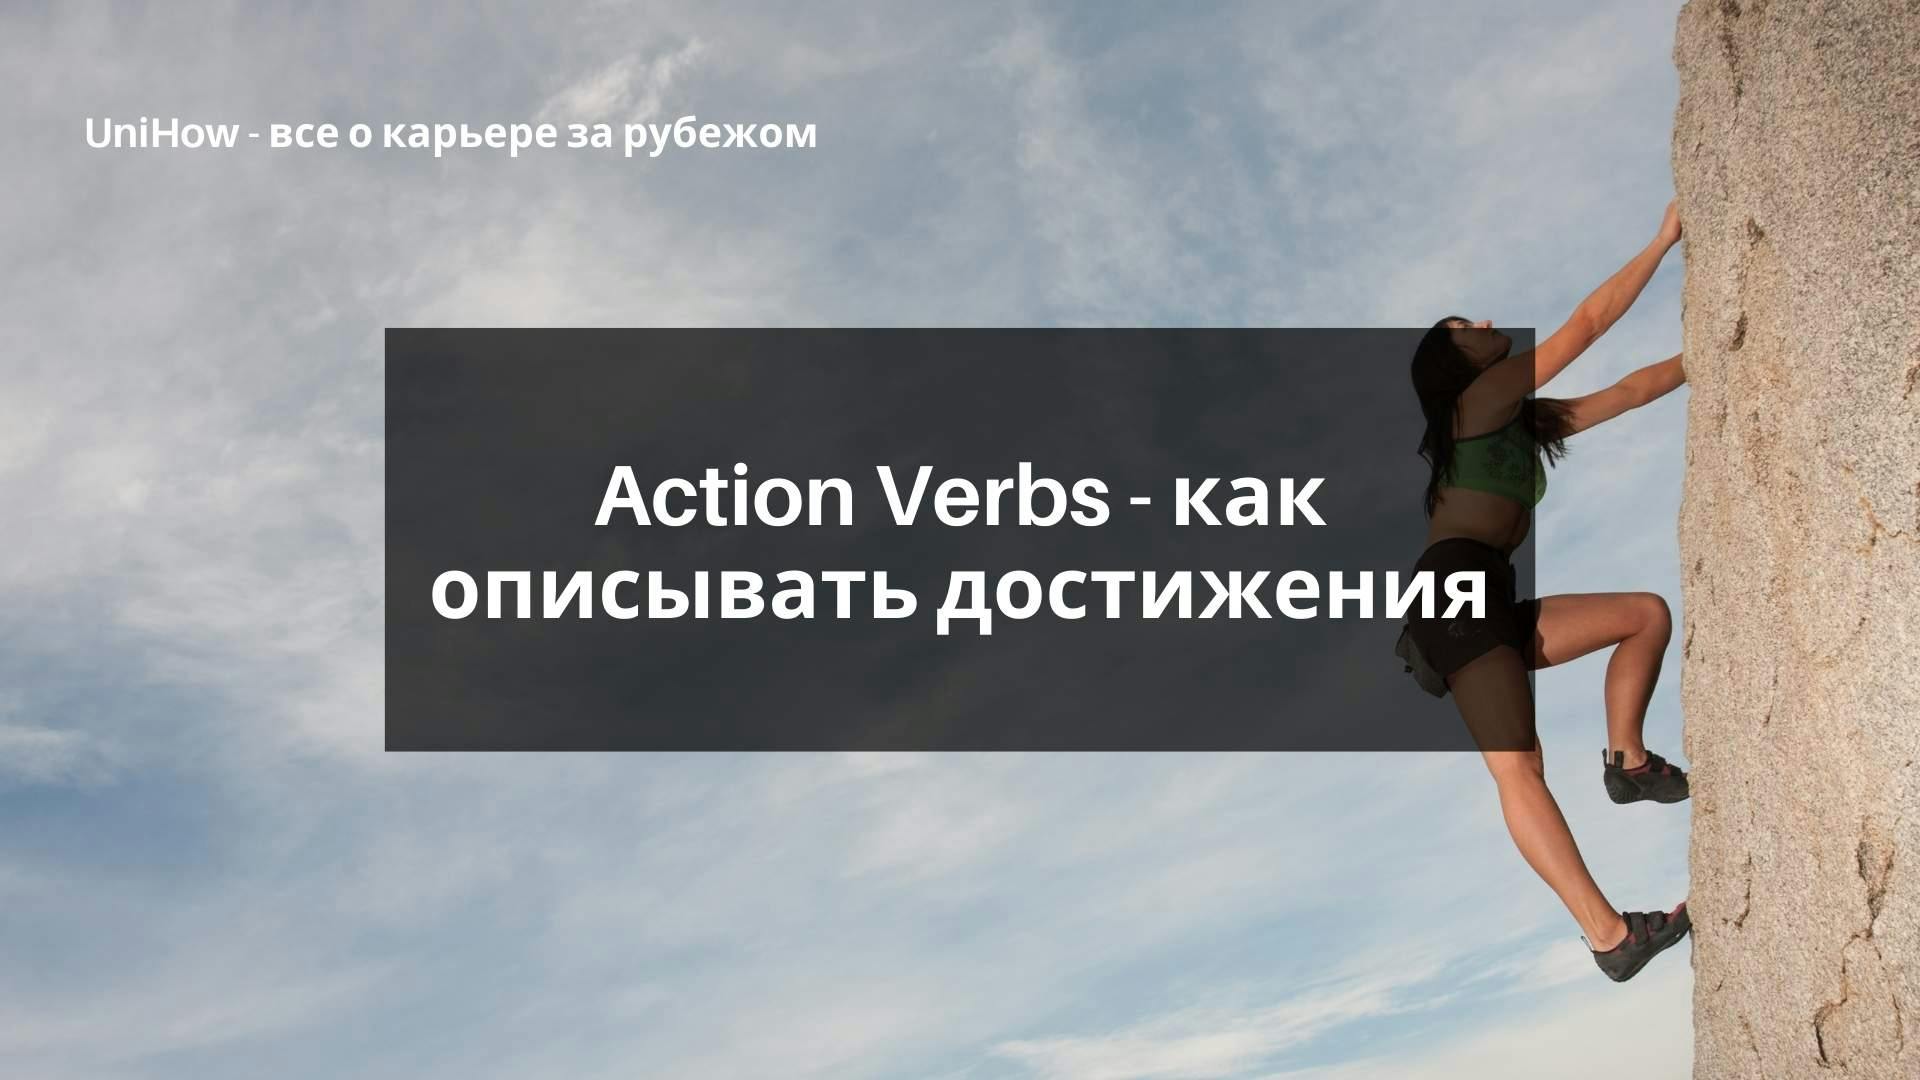 Action Verbs - как описывать достижения в CV